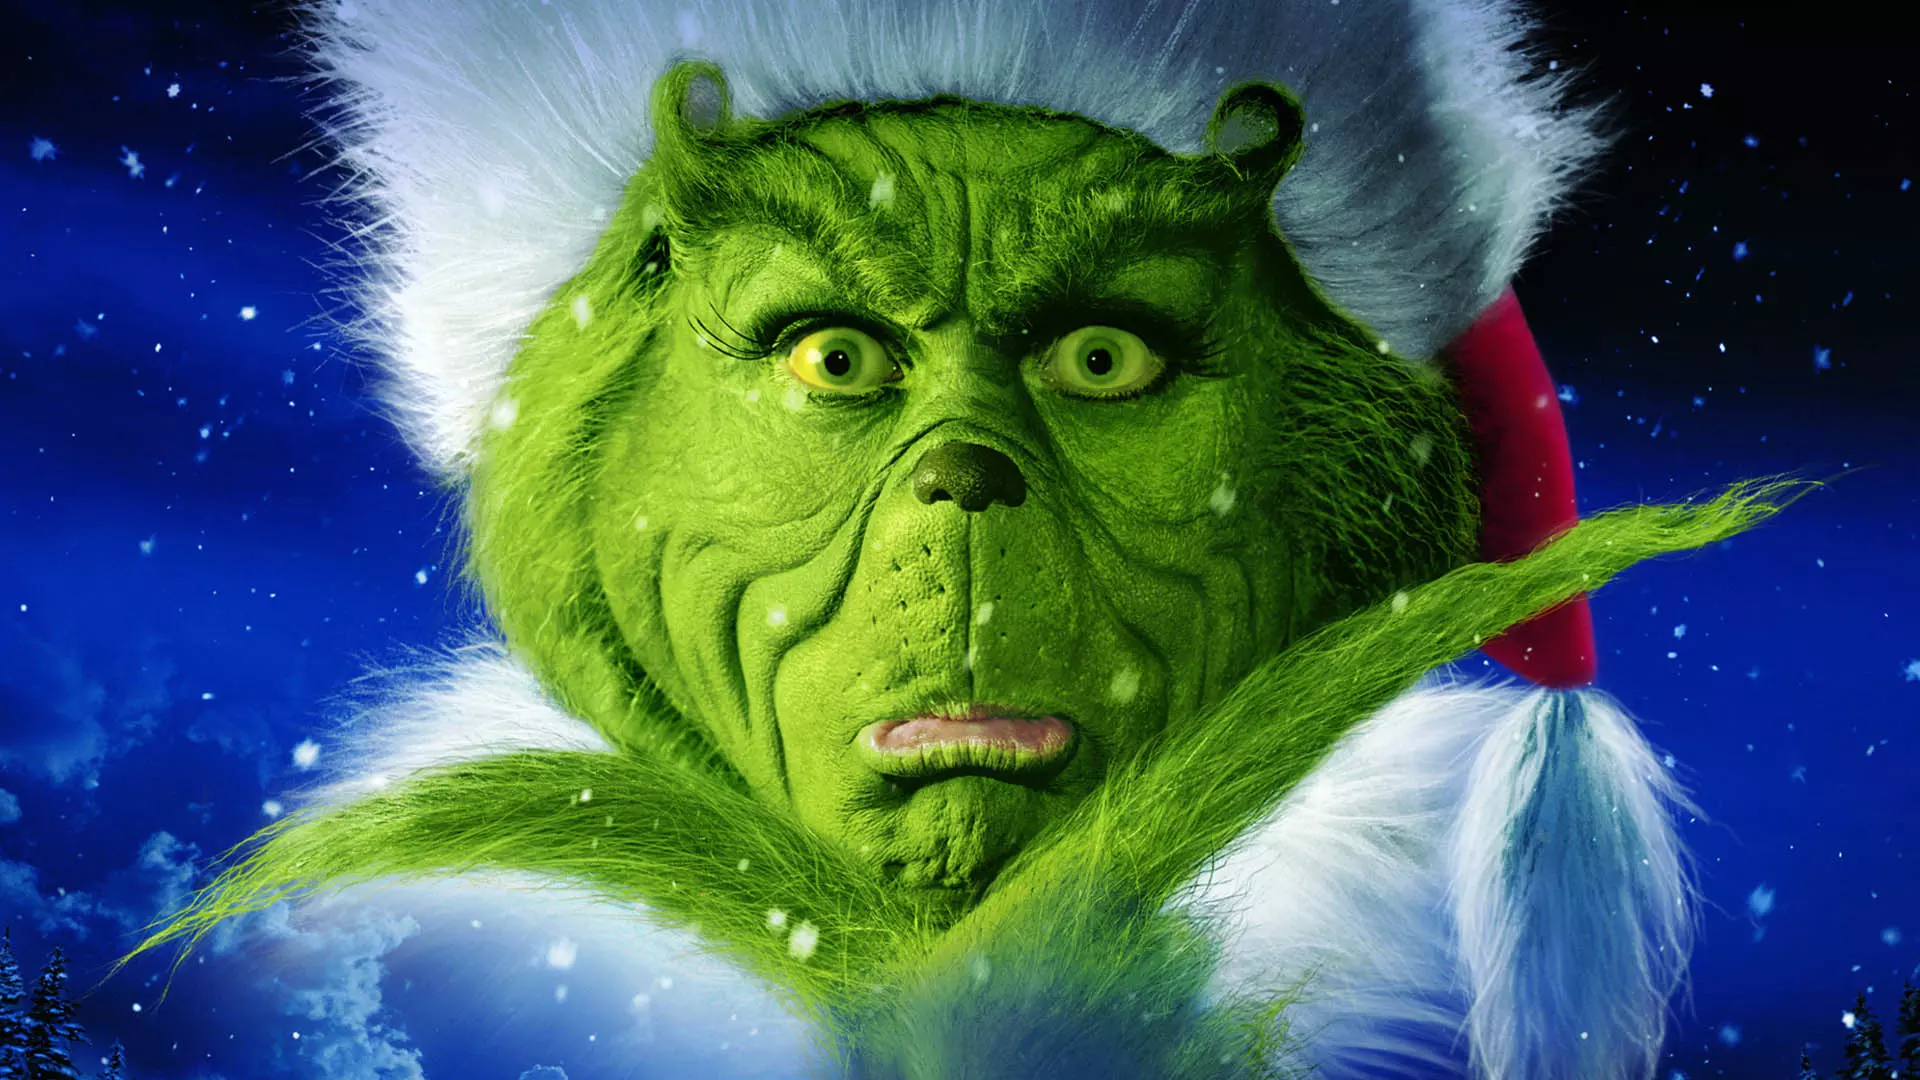 جیم کری در فیلم How the Grinch Stole Christmas